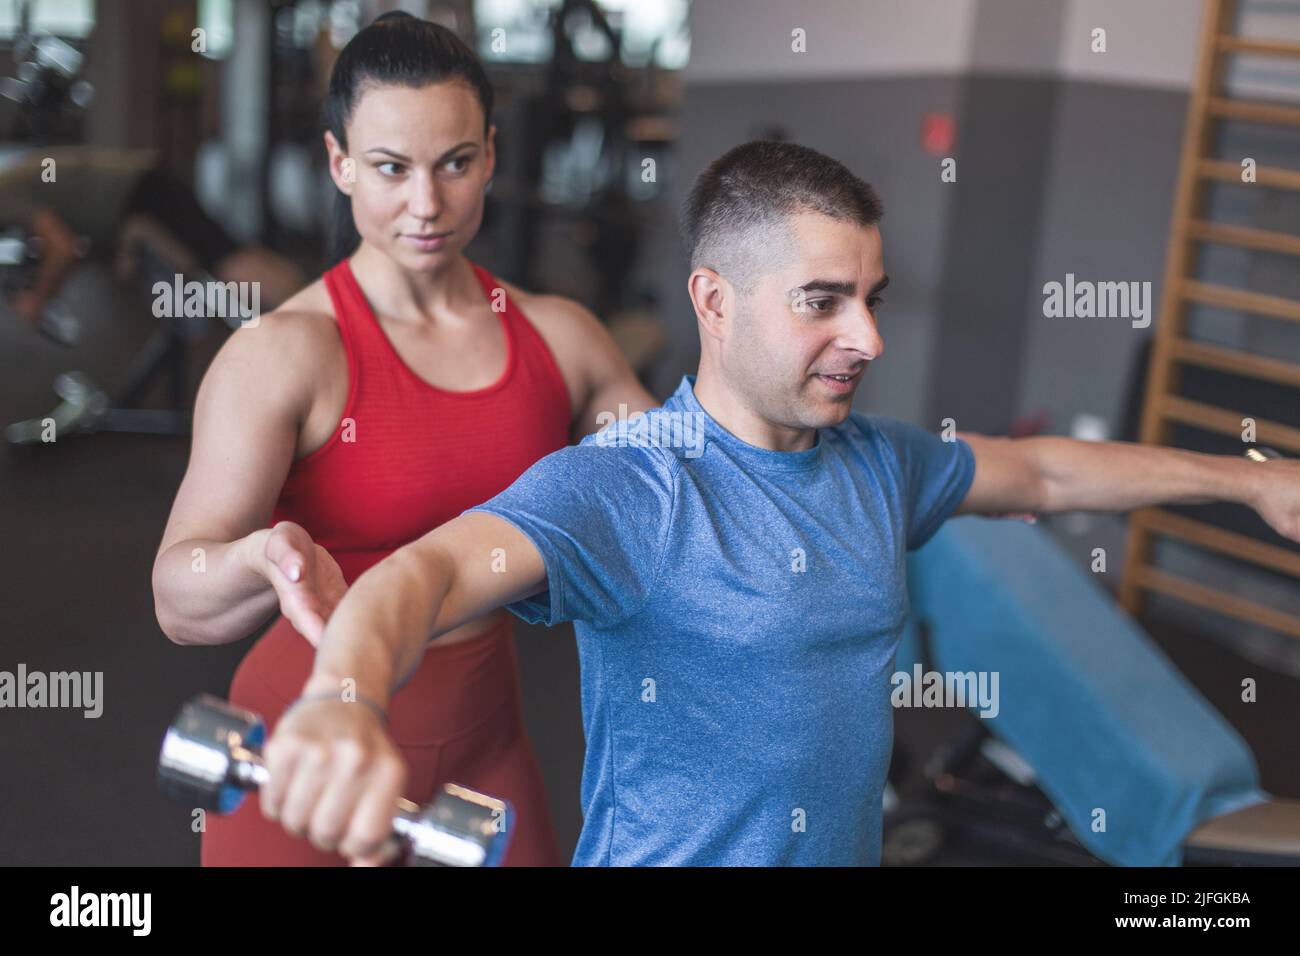 Junge sportliche kaukasische Personal Trainer Frau hält Kunden Ellbogen während des Trainings mit Hanteln Stockfoto